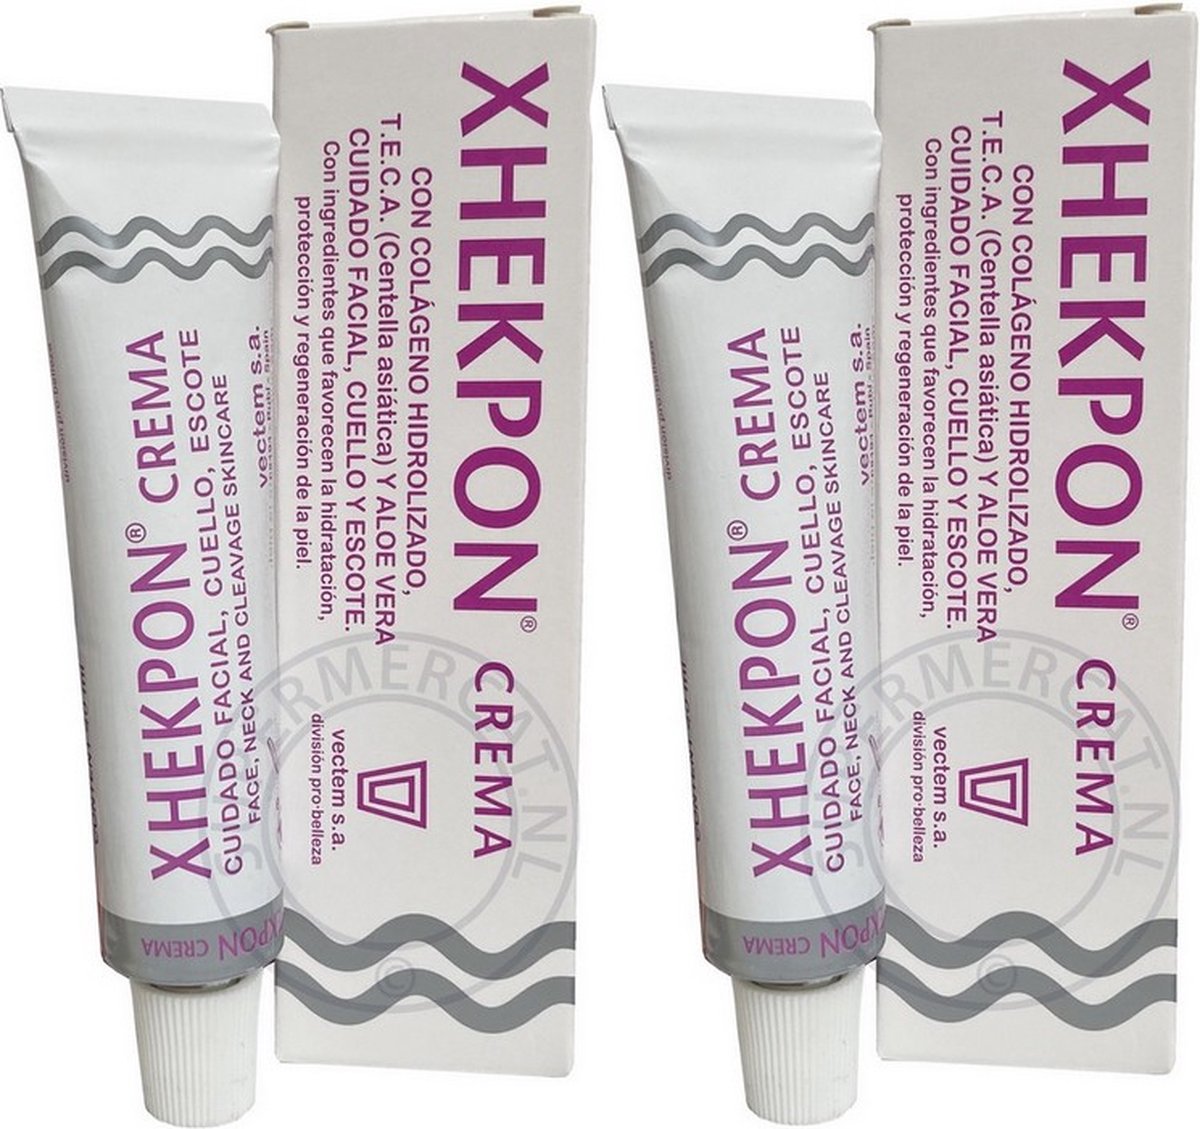 VOORDEEL PACK - 2 stuks Xhekpon Crème - Anti Aging met Colageen 40ml uit Spanje ( Xhekpon Cream - Xhekpon Crema)